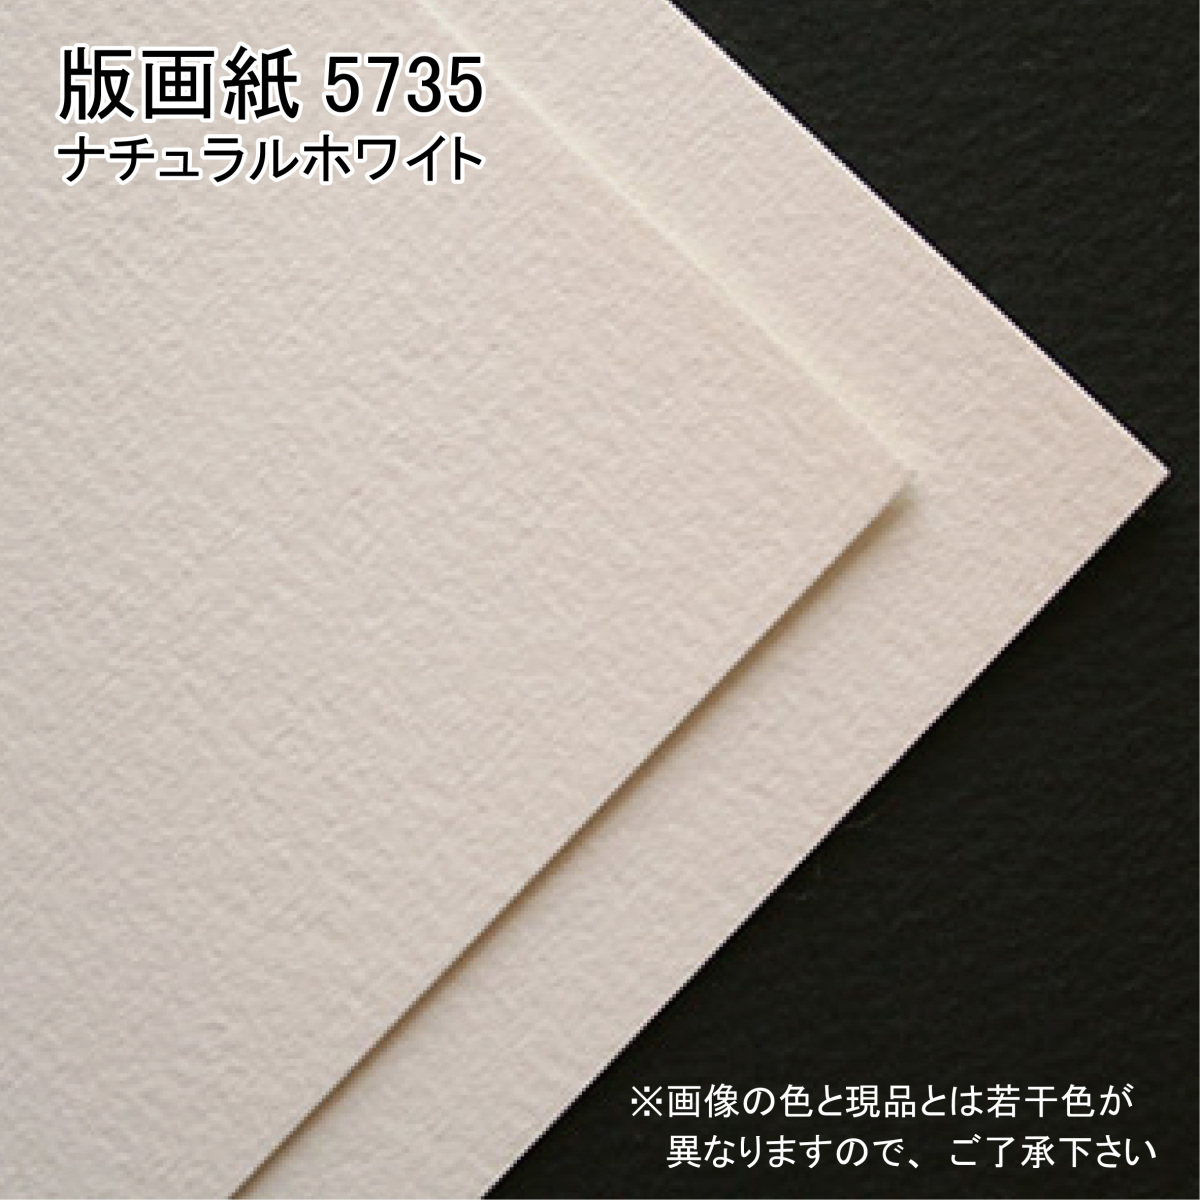  - -ne Mu re фирма гравюра на дереве бумага 5735( натуральный белый )20 листов входит B5 Orion 